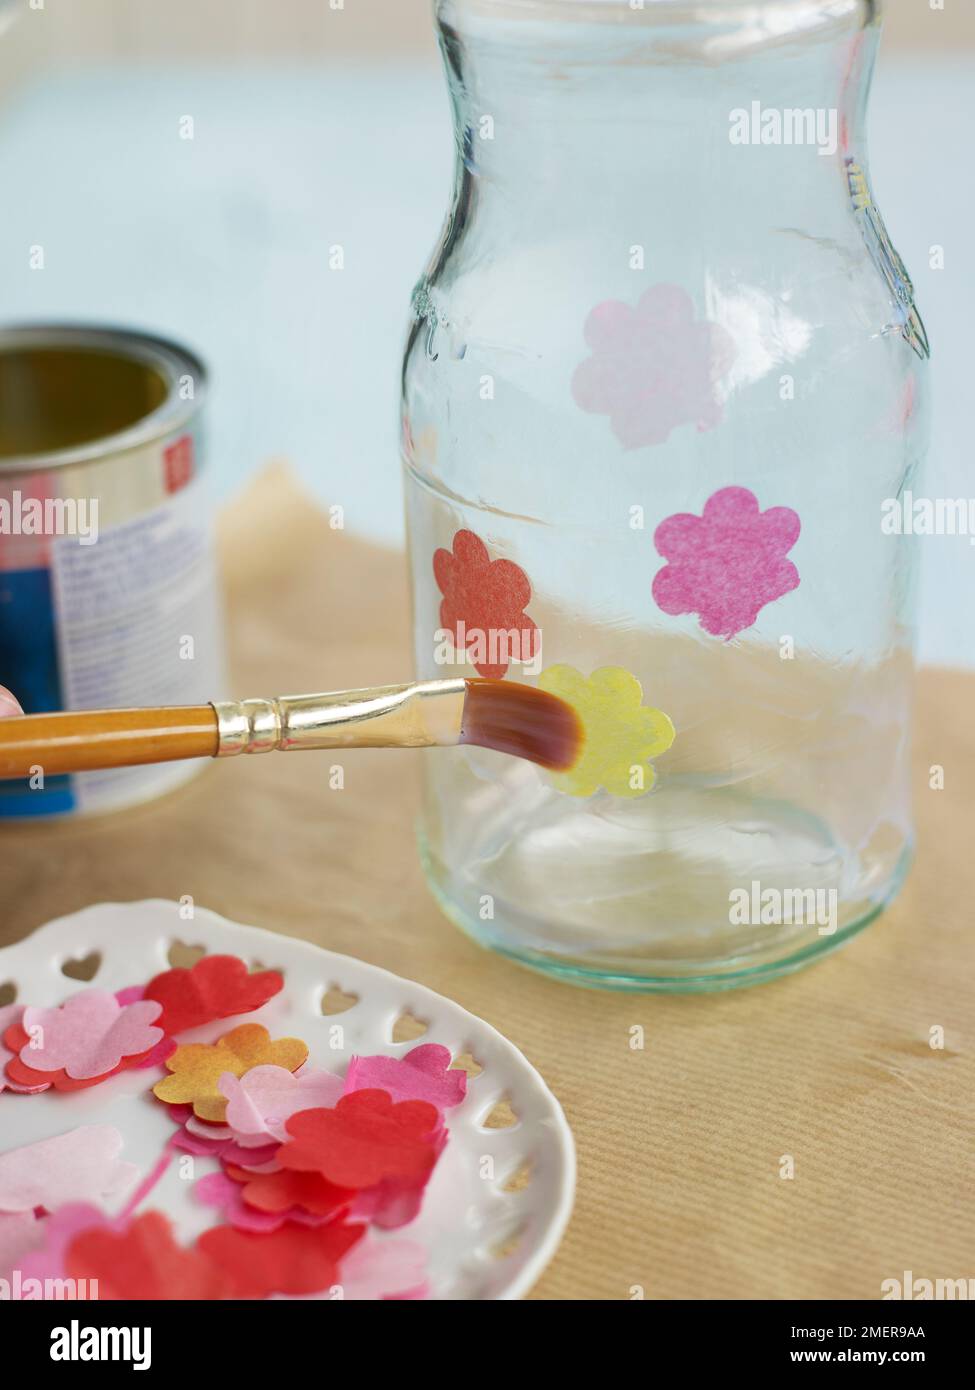 Dekorieren Sie Glasbecher mit Blüten aus Papiertüchern, kleben Sie sie auf eine Schicht Klarlack, und machen Sie Glasbecher aus Kerzenglas Stockfoto